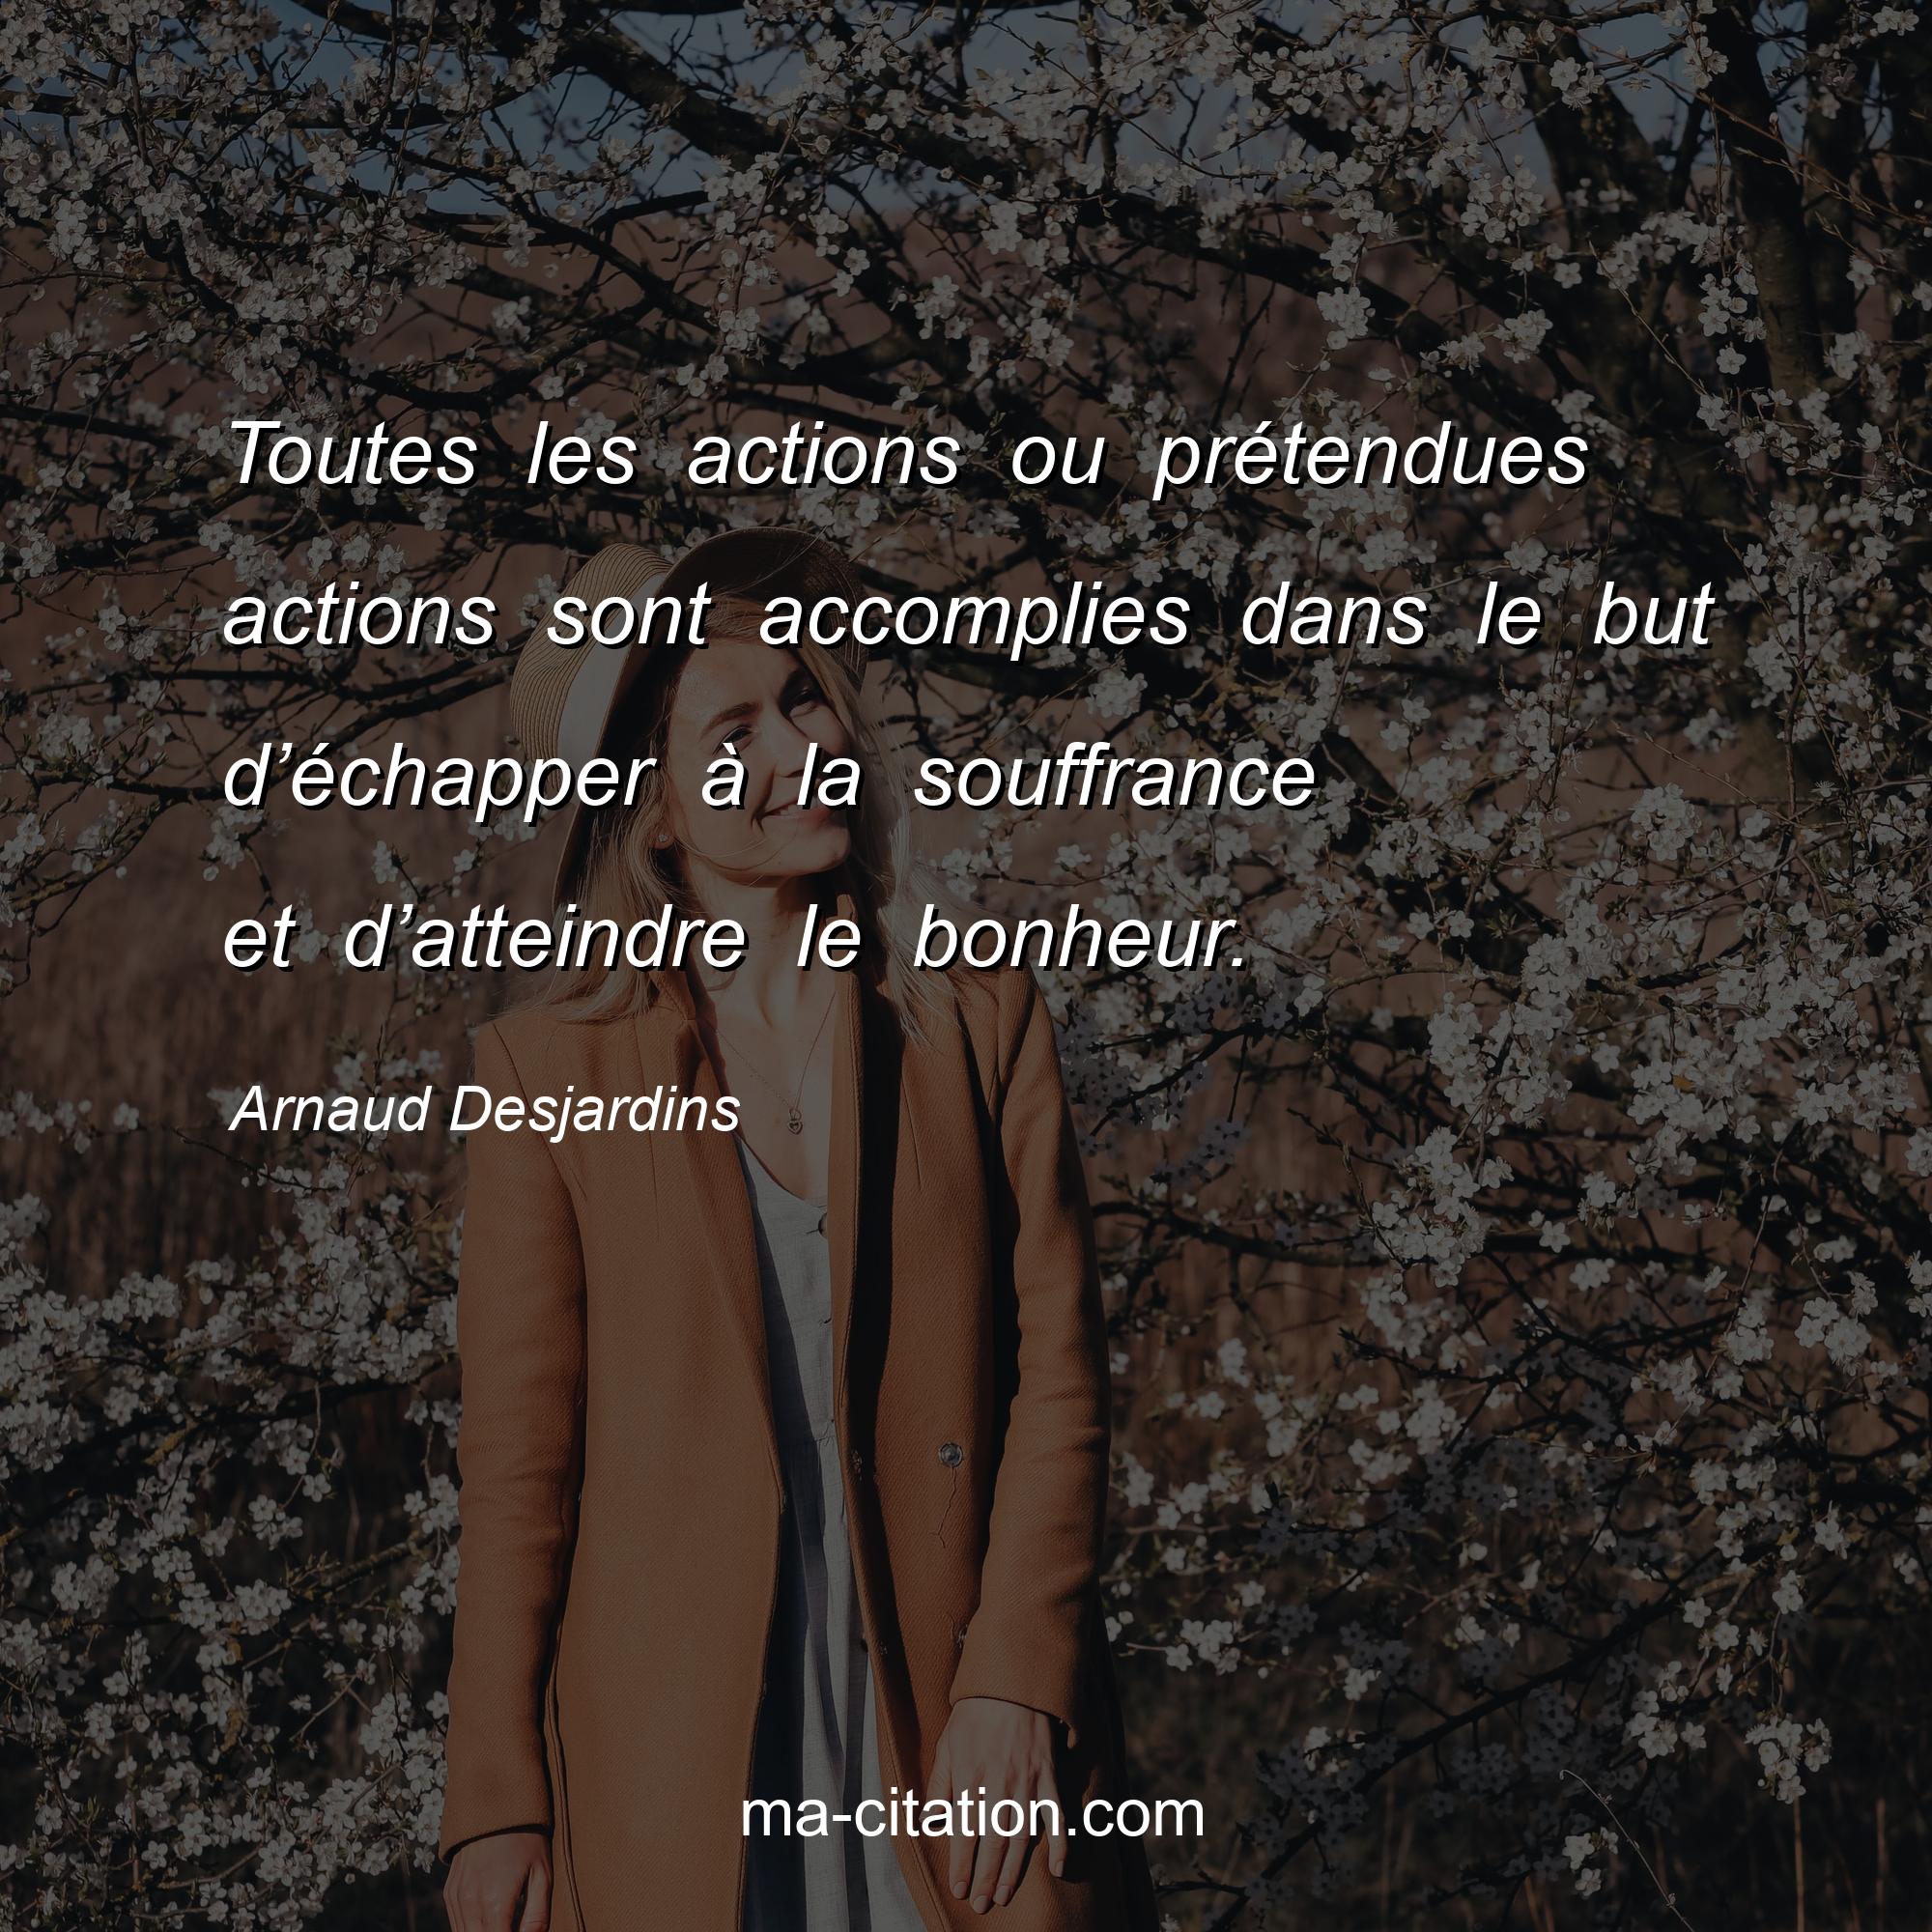 Arnaud Desjardins : Toutes les actions ou prétendues actions sont accomplies dans le but d’échapper à la souffrance et d’atteindre le bonheur.